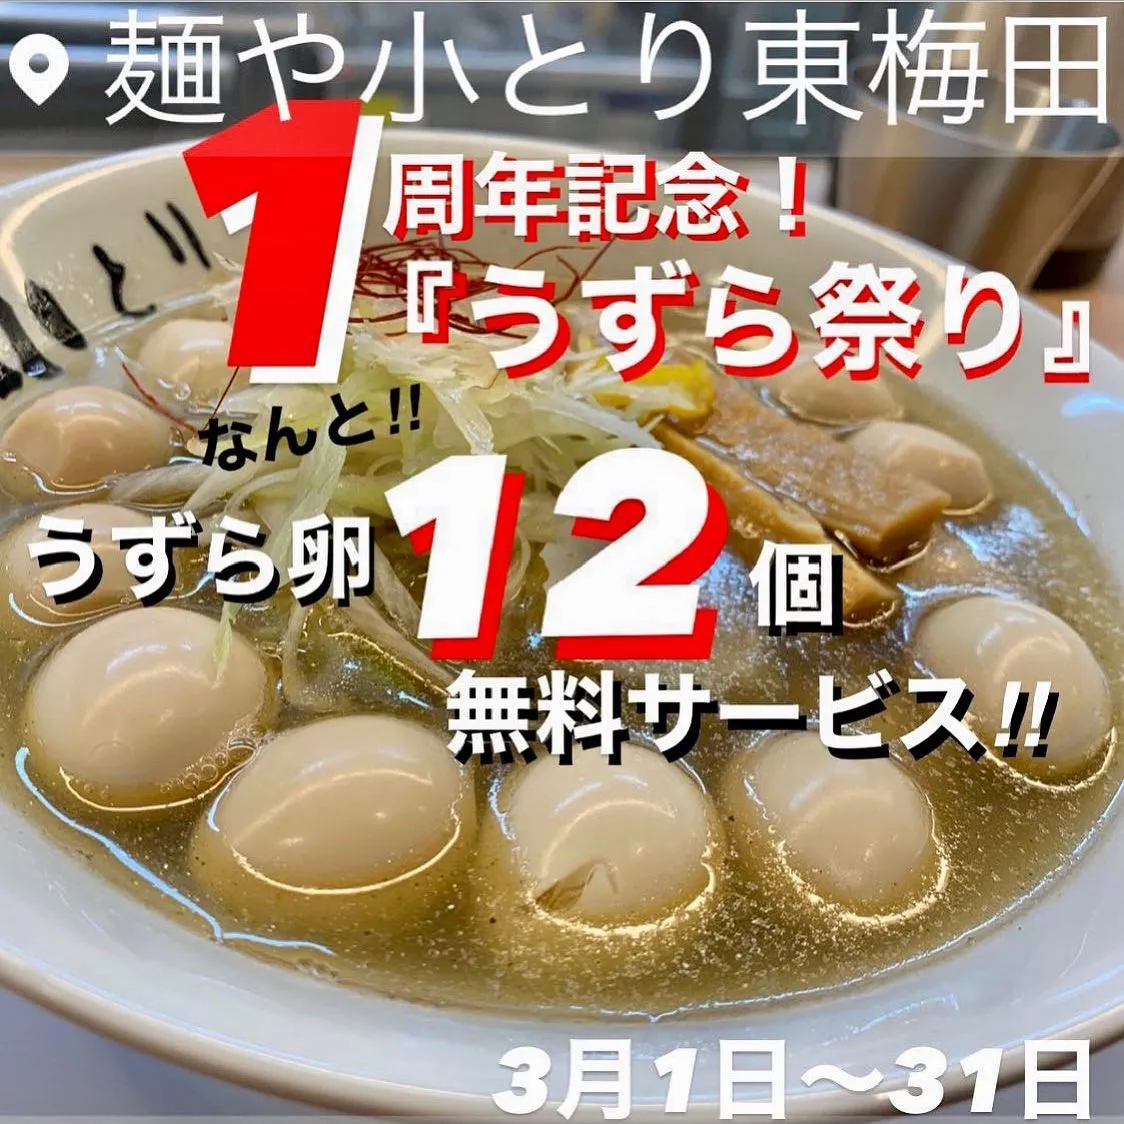 いよいよ3/31まで❗️#麺や小とり東梅田  1周年🍜㊗️✨